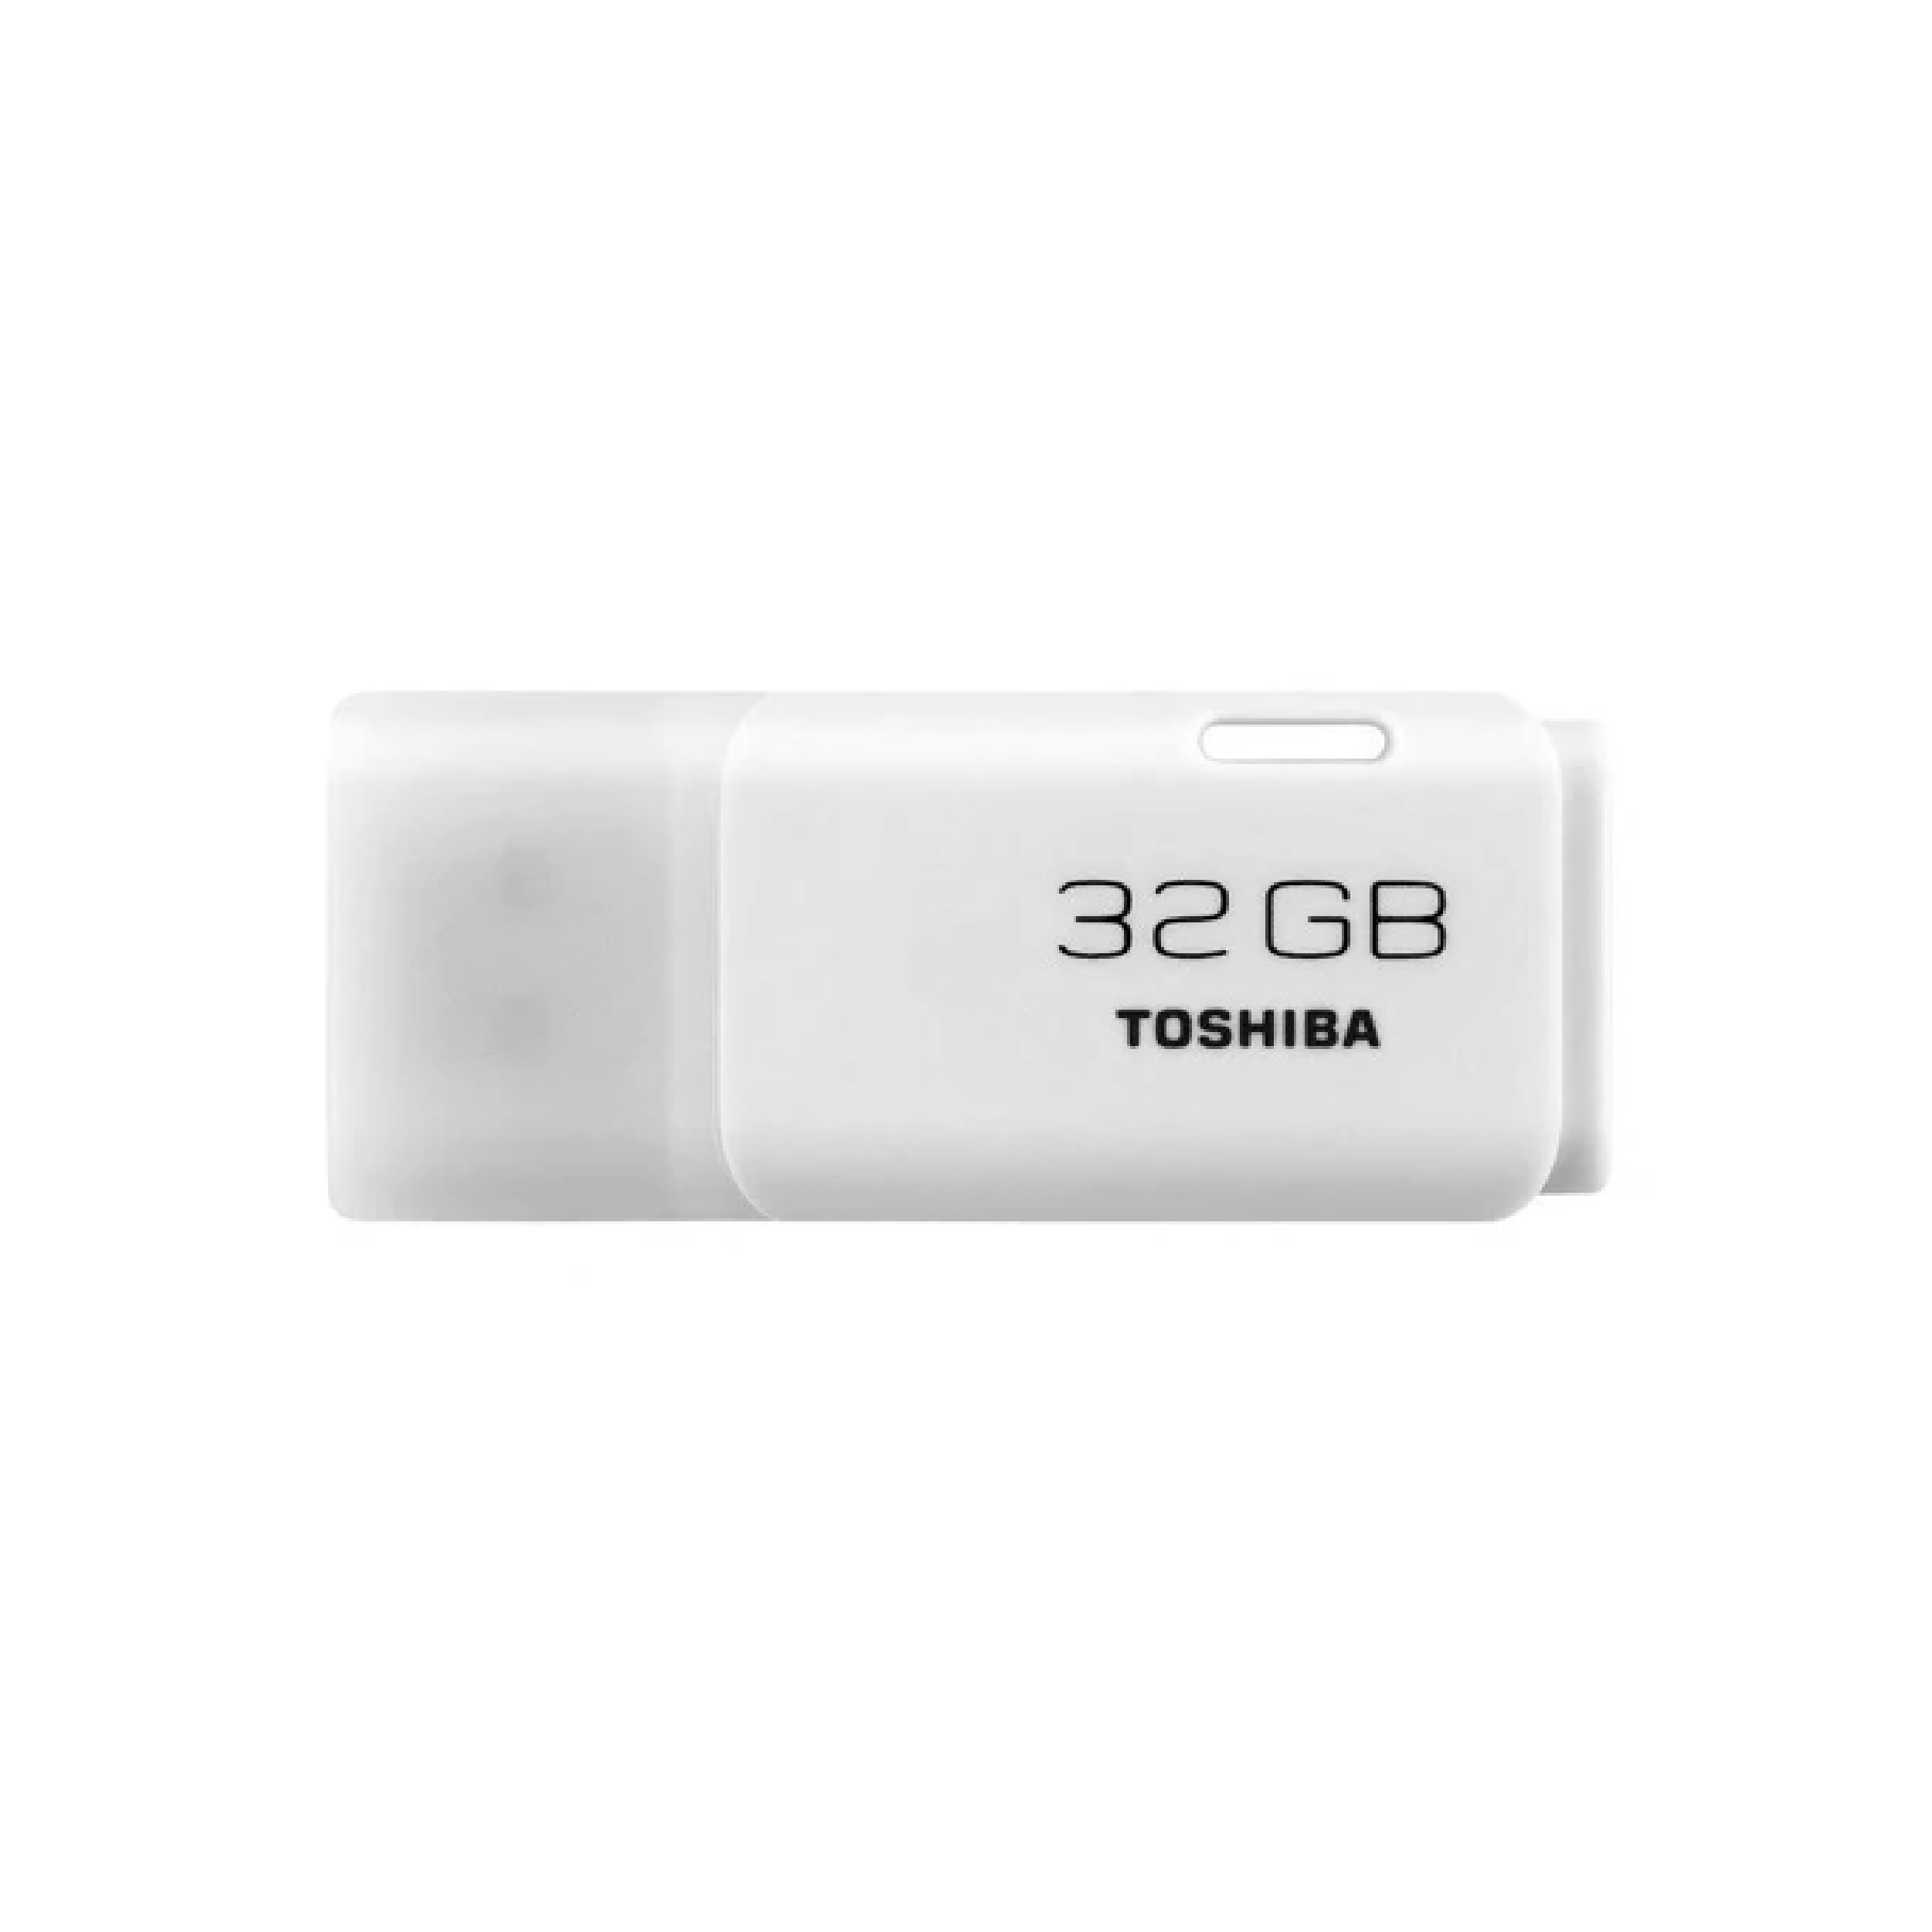 Toshiba TransMemory, 32GB, USB 2.0, USB Flash Drive, White (U202)